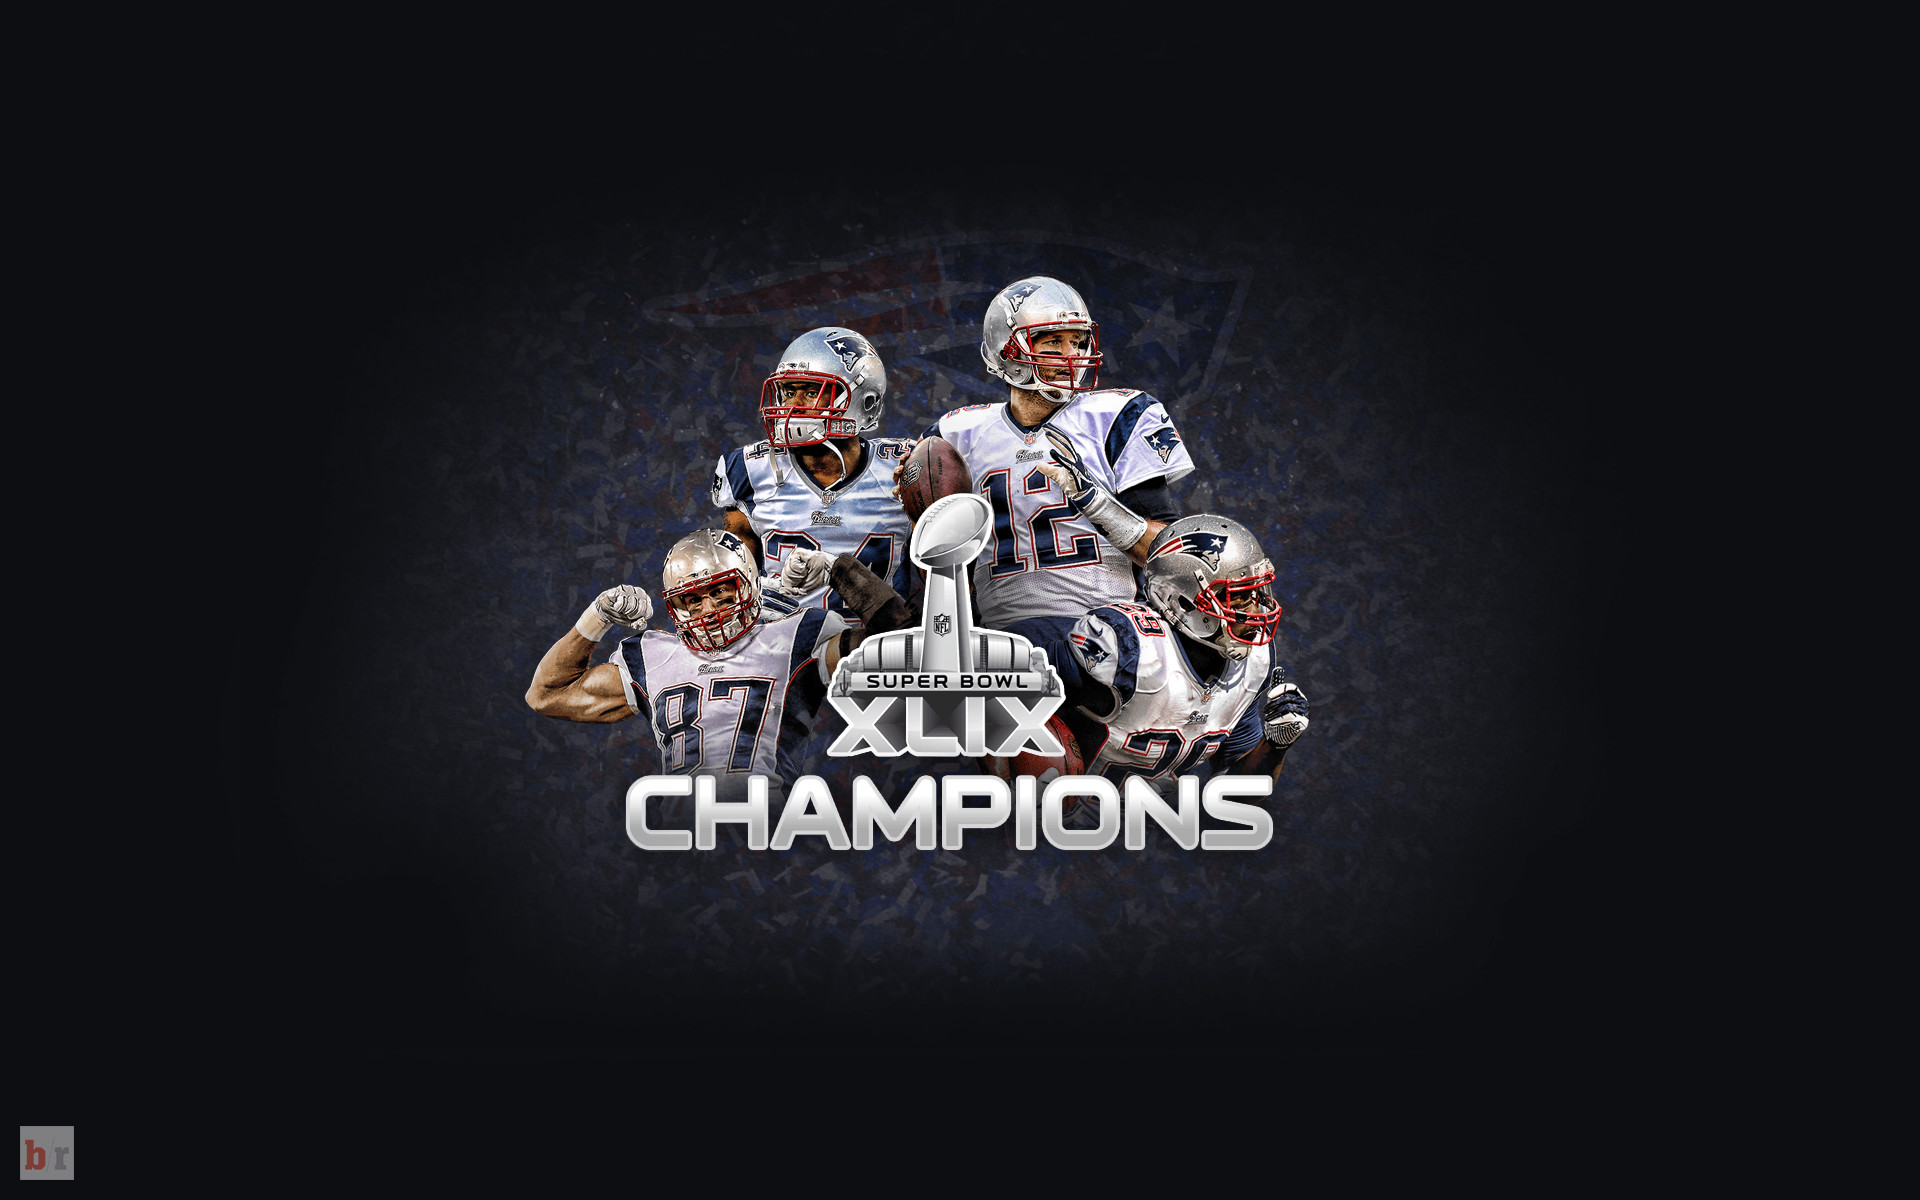 1920x1200  Patriots Super Bowl Champions 2017 iPhone Wallpaper - Wallpaper  Rocket">. Download Â· 1600x900 ...